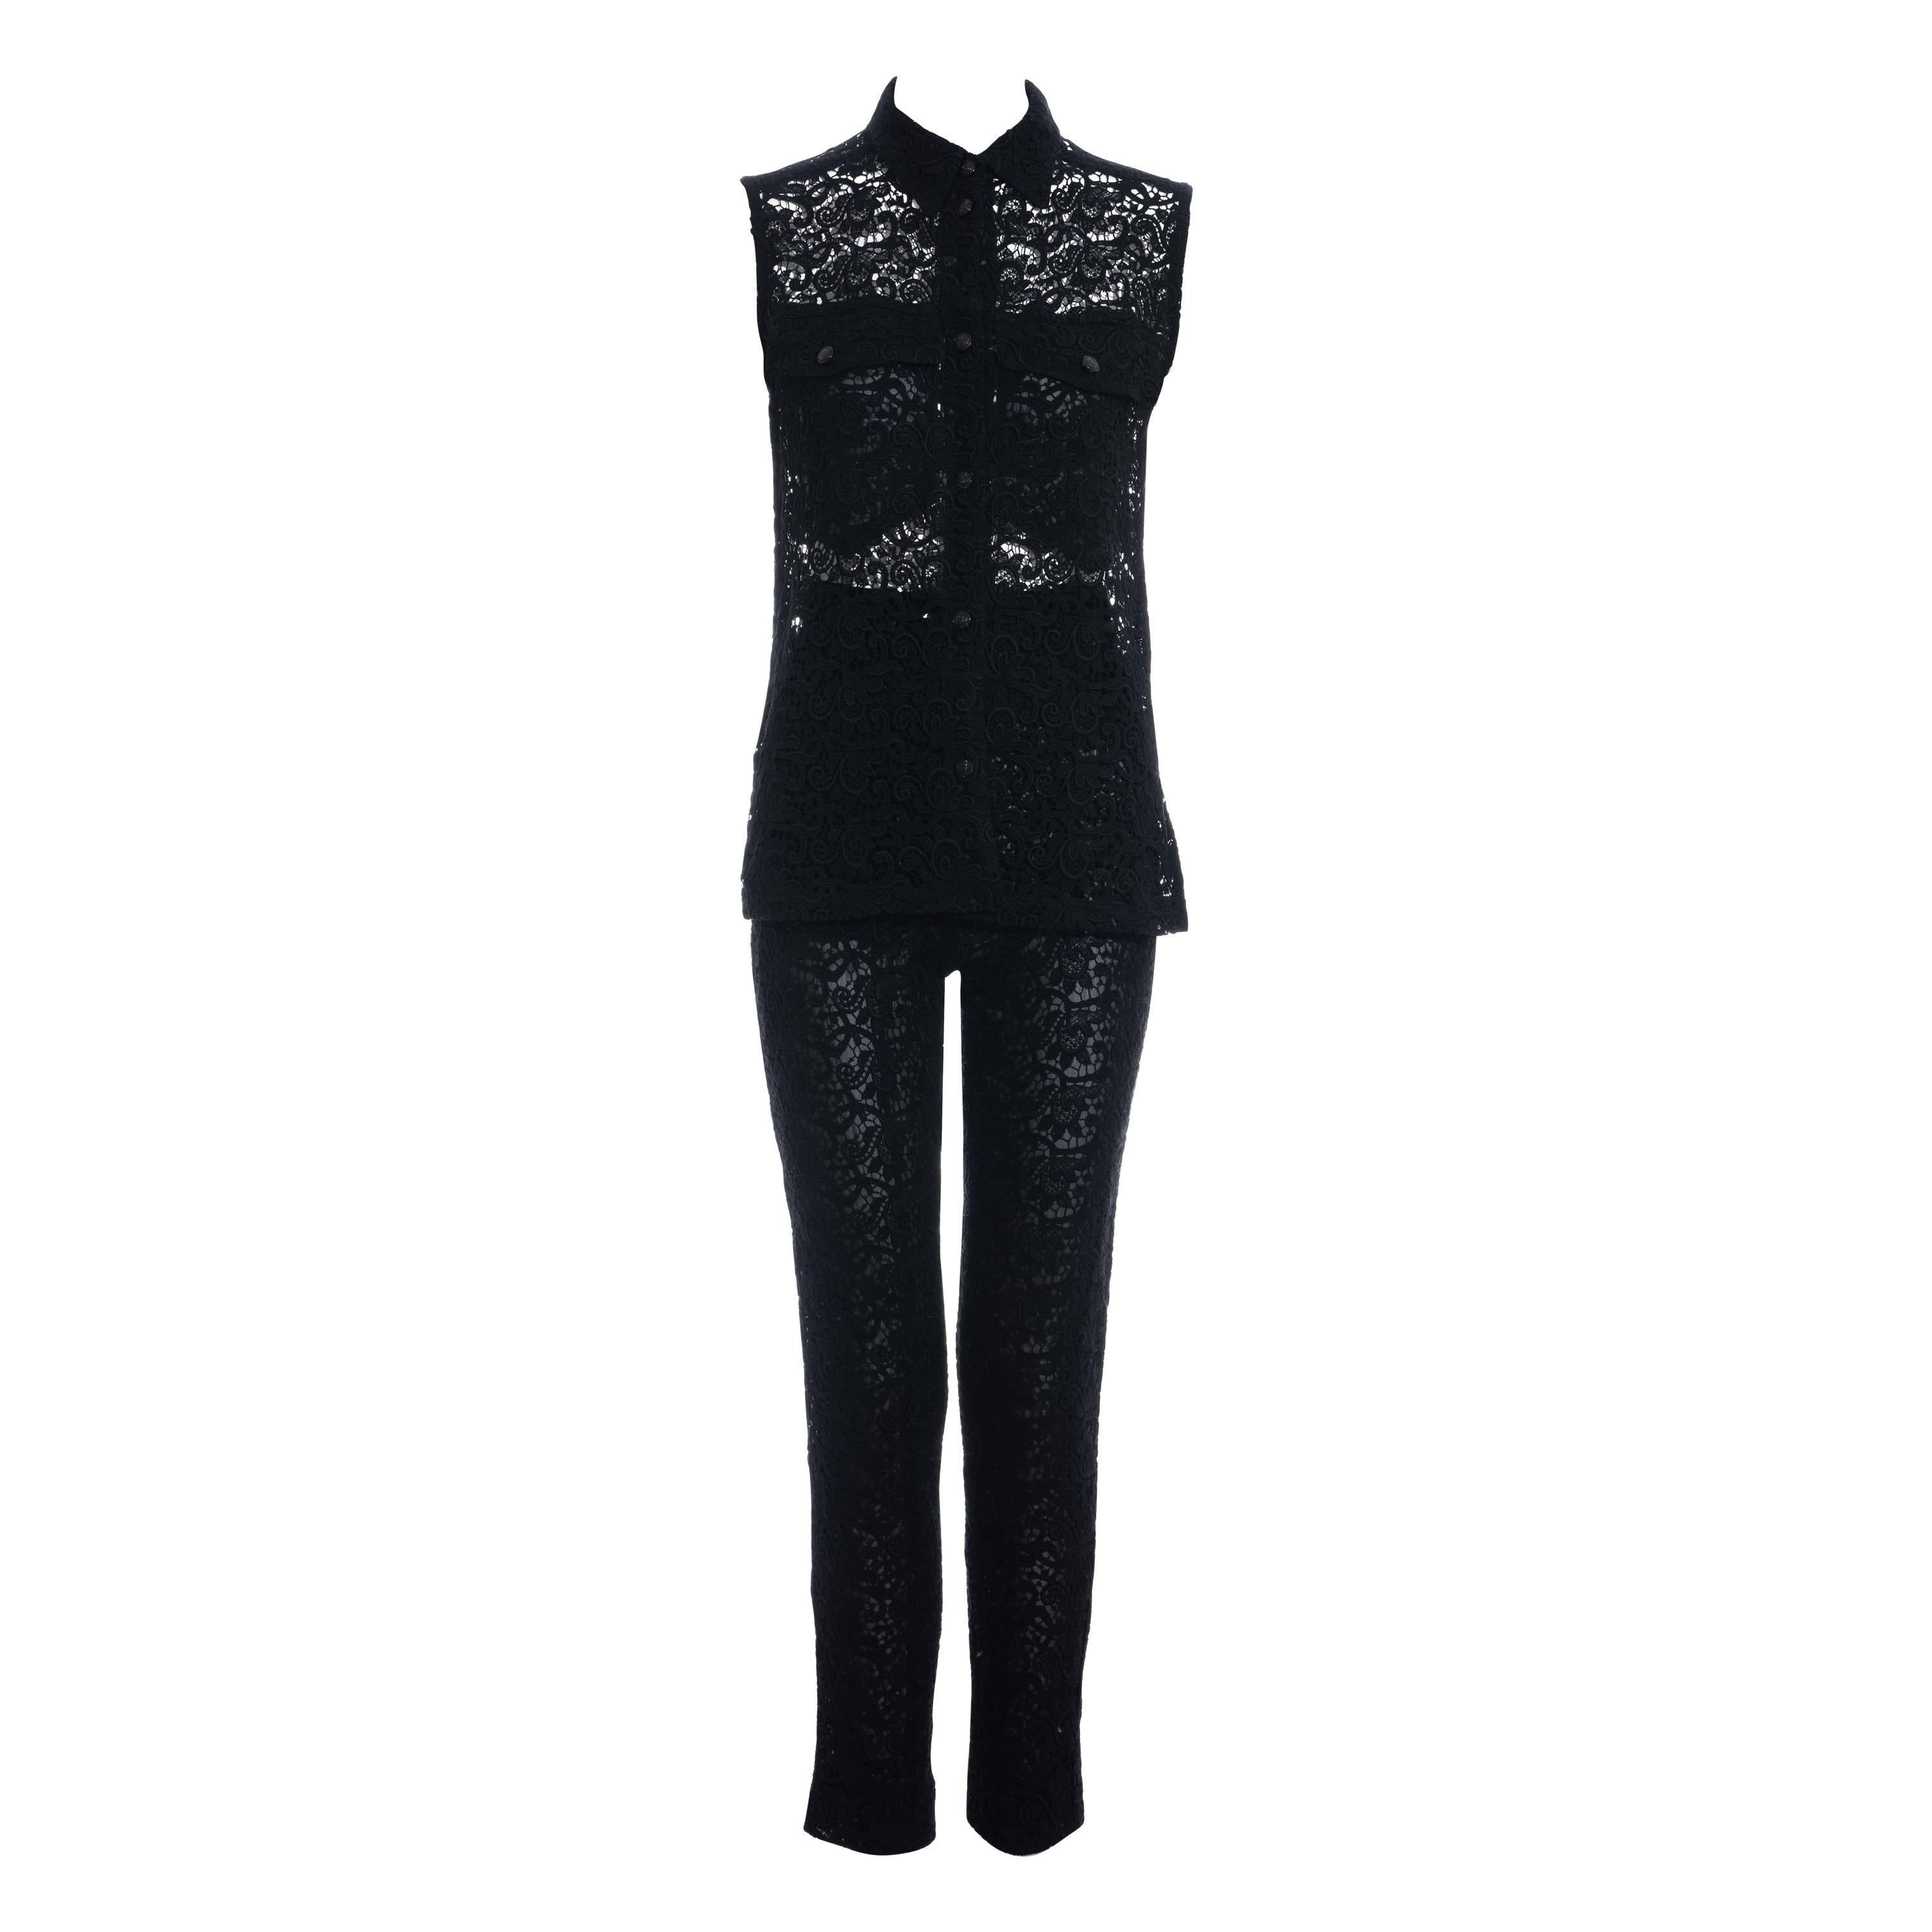 Gianni Versace black cotton lace pant suit, ss 1994